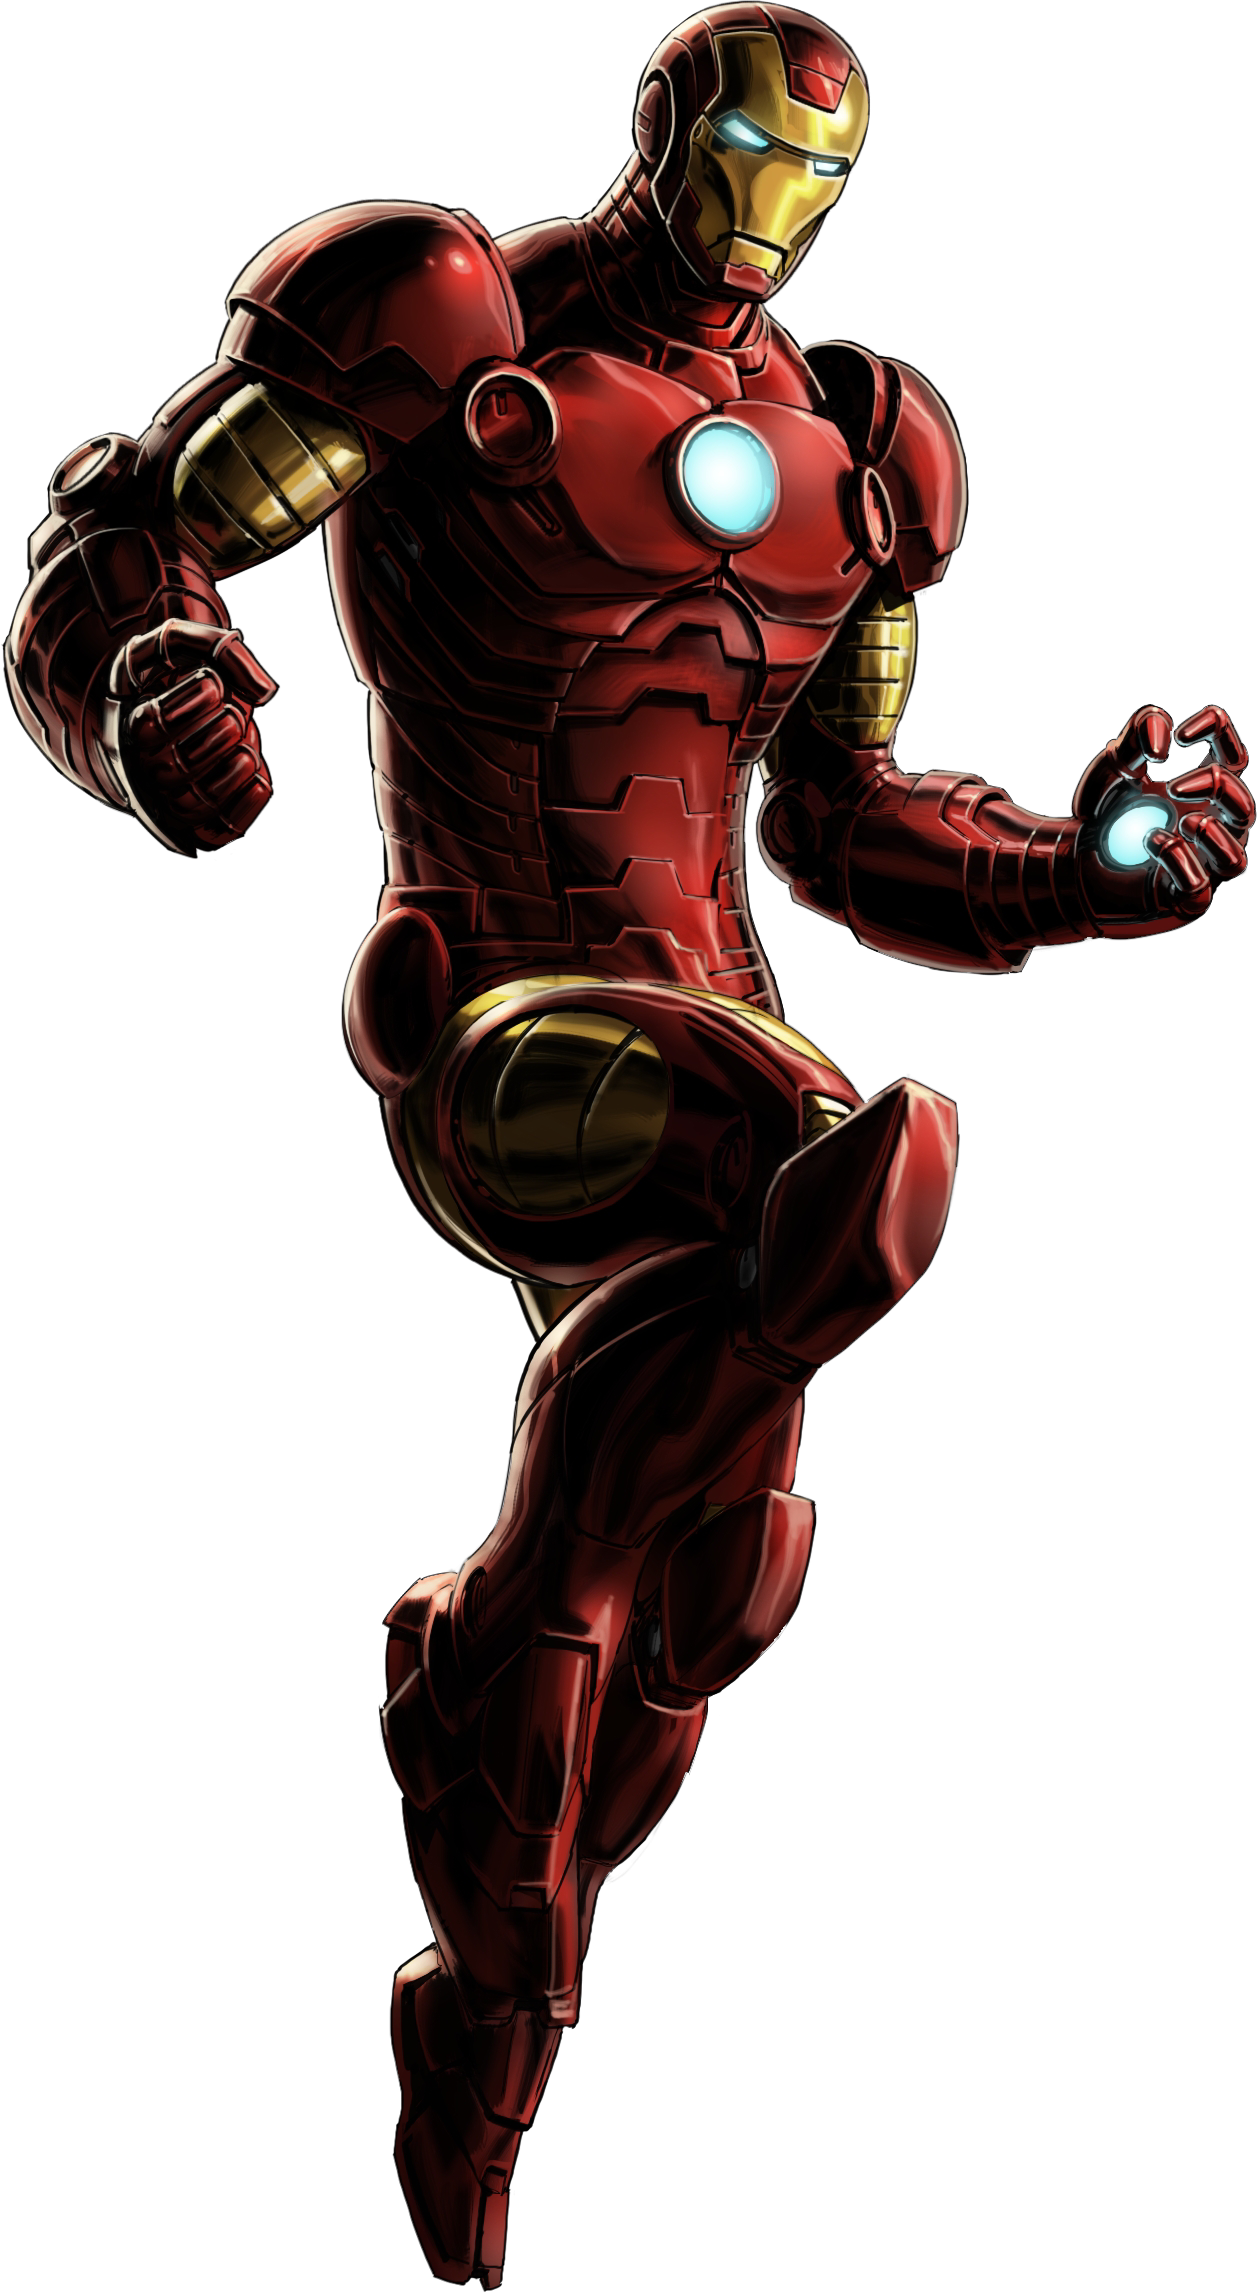  Gambar  Cartoon Iron  Man  Gambar  C